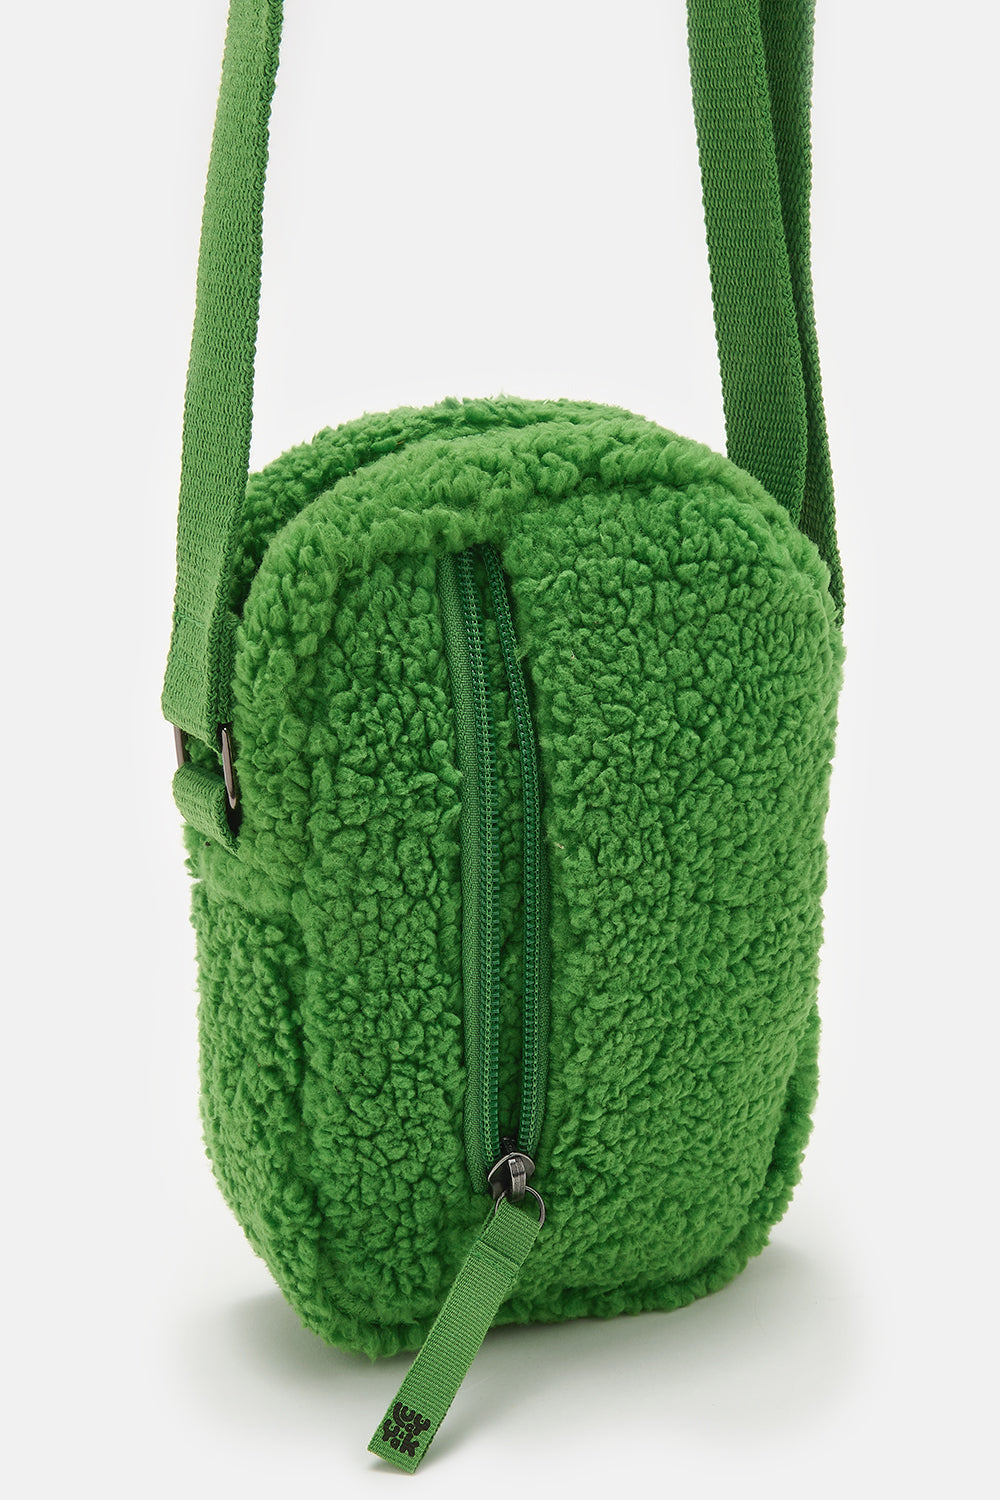 Lucy & Yak Brady Bag: Deadstock Fabric - Zest Green